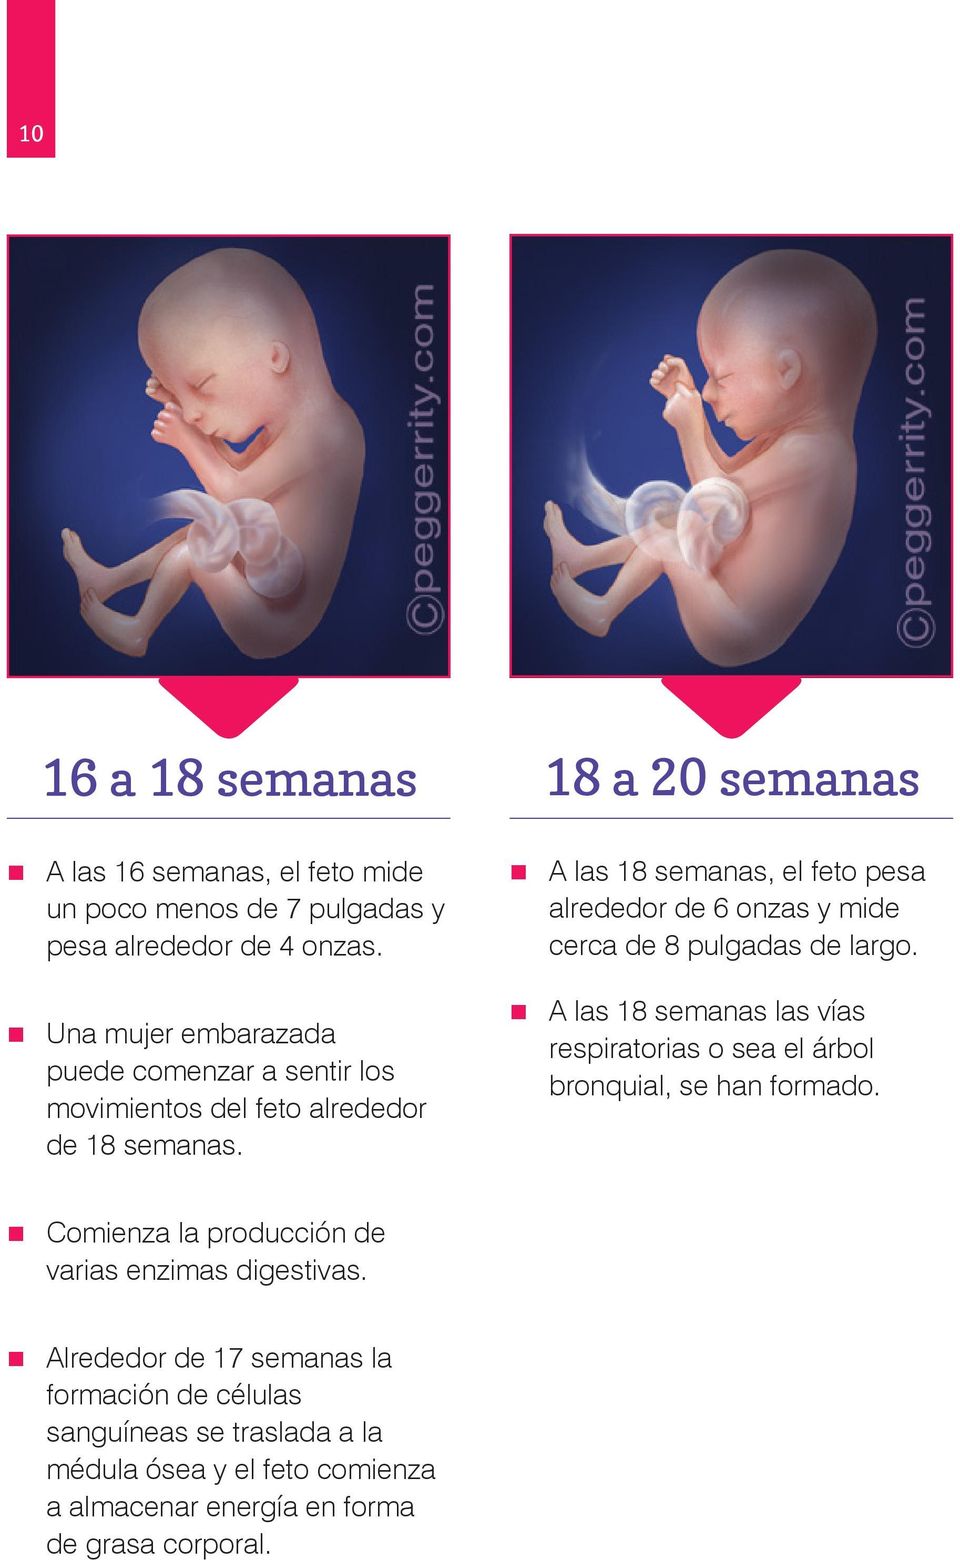 18 a 20 semanas A las 18 semanas, el feto pesa alrededor de 6 onzas y mide cerca de 8 pulgadas de largo.